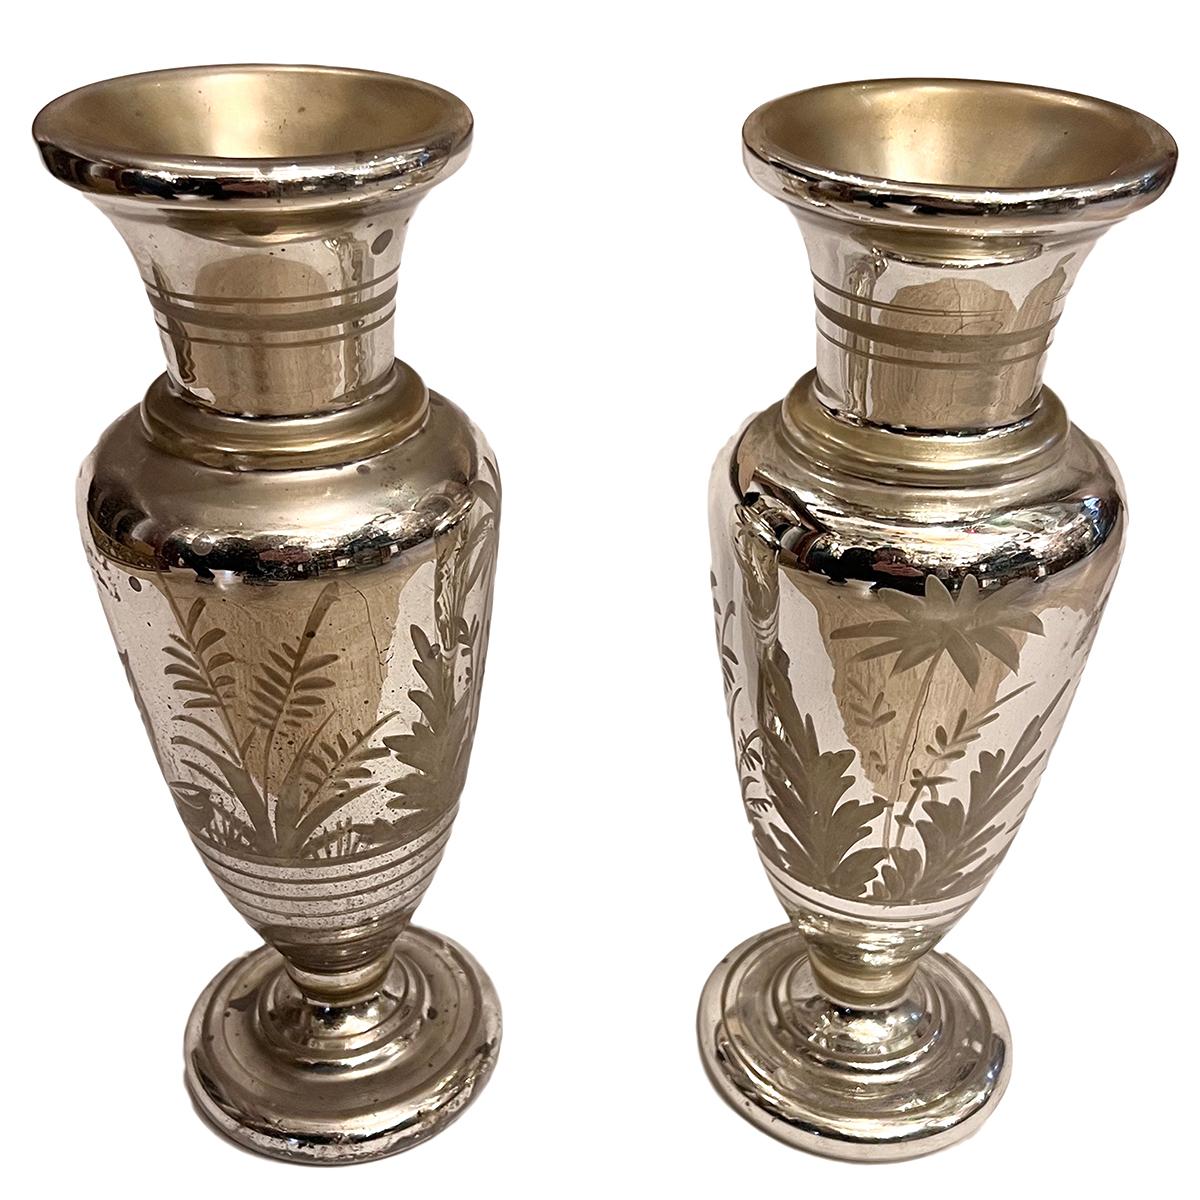 Paar französische Vasen aus geätztem Quecksilberglas aus den 1920er Jahren. Verkauft als Paar.

Abmessungen:
Höhe: 12.5